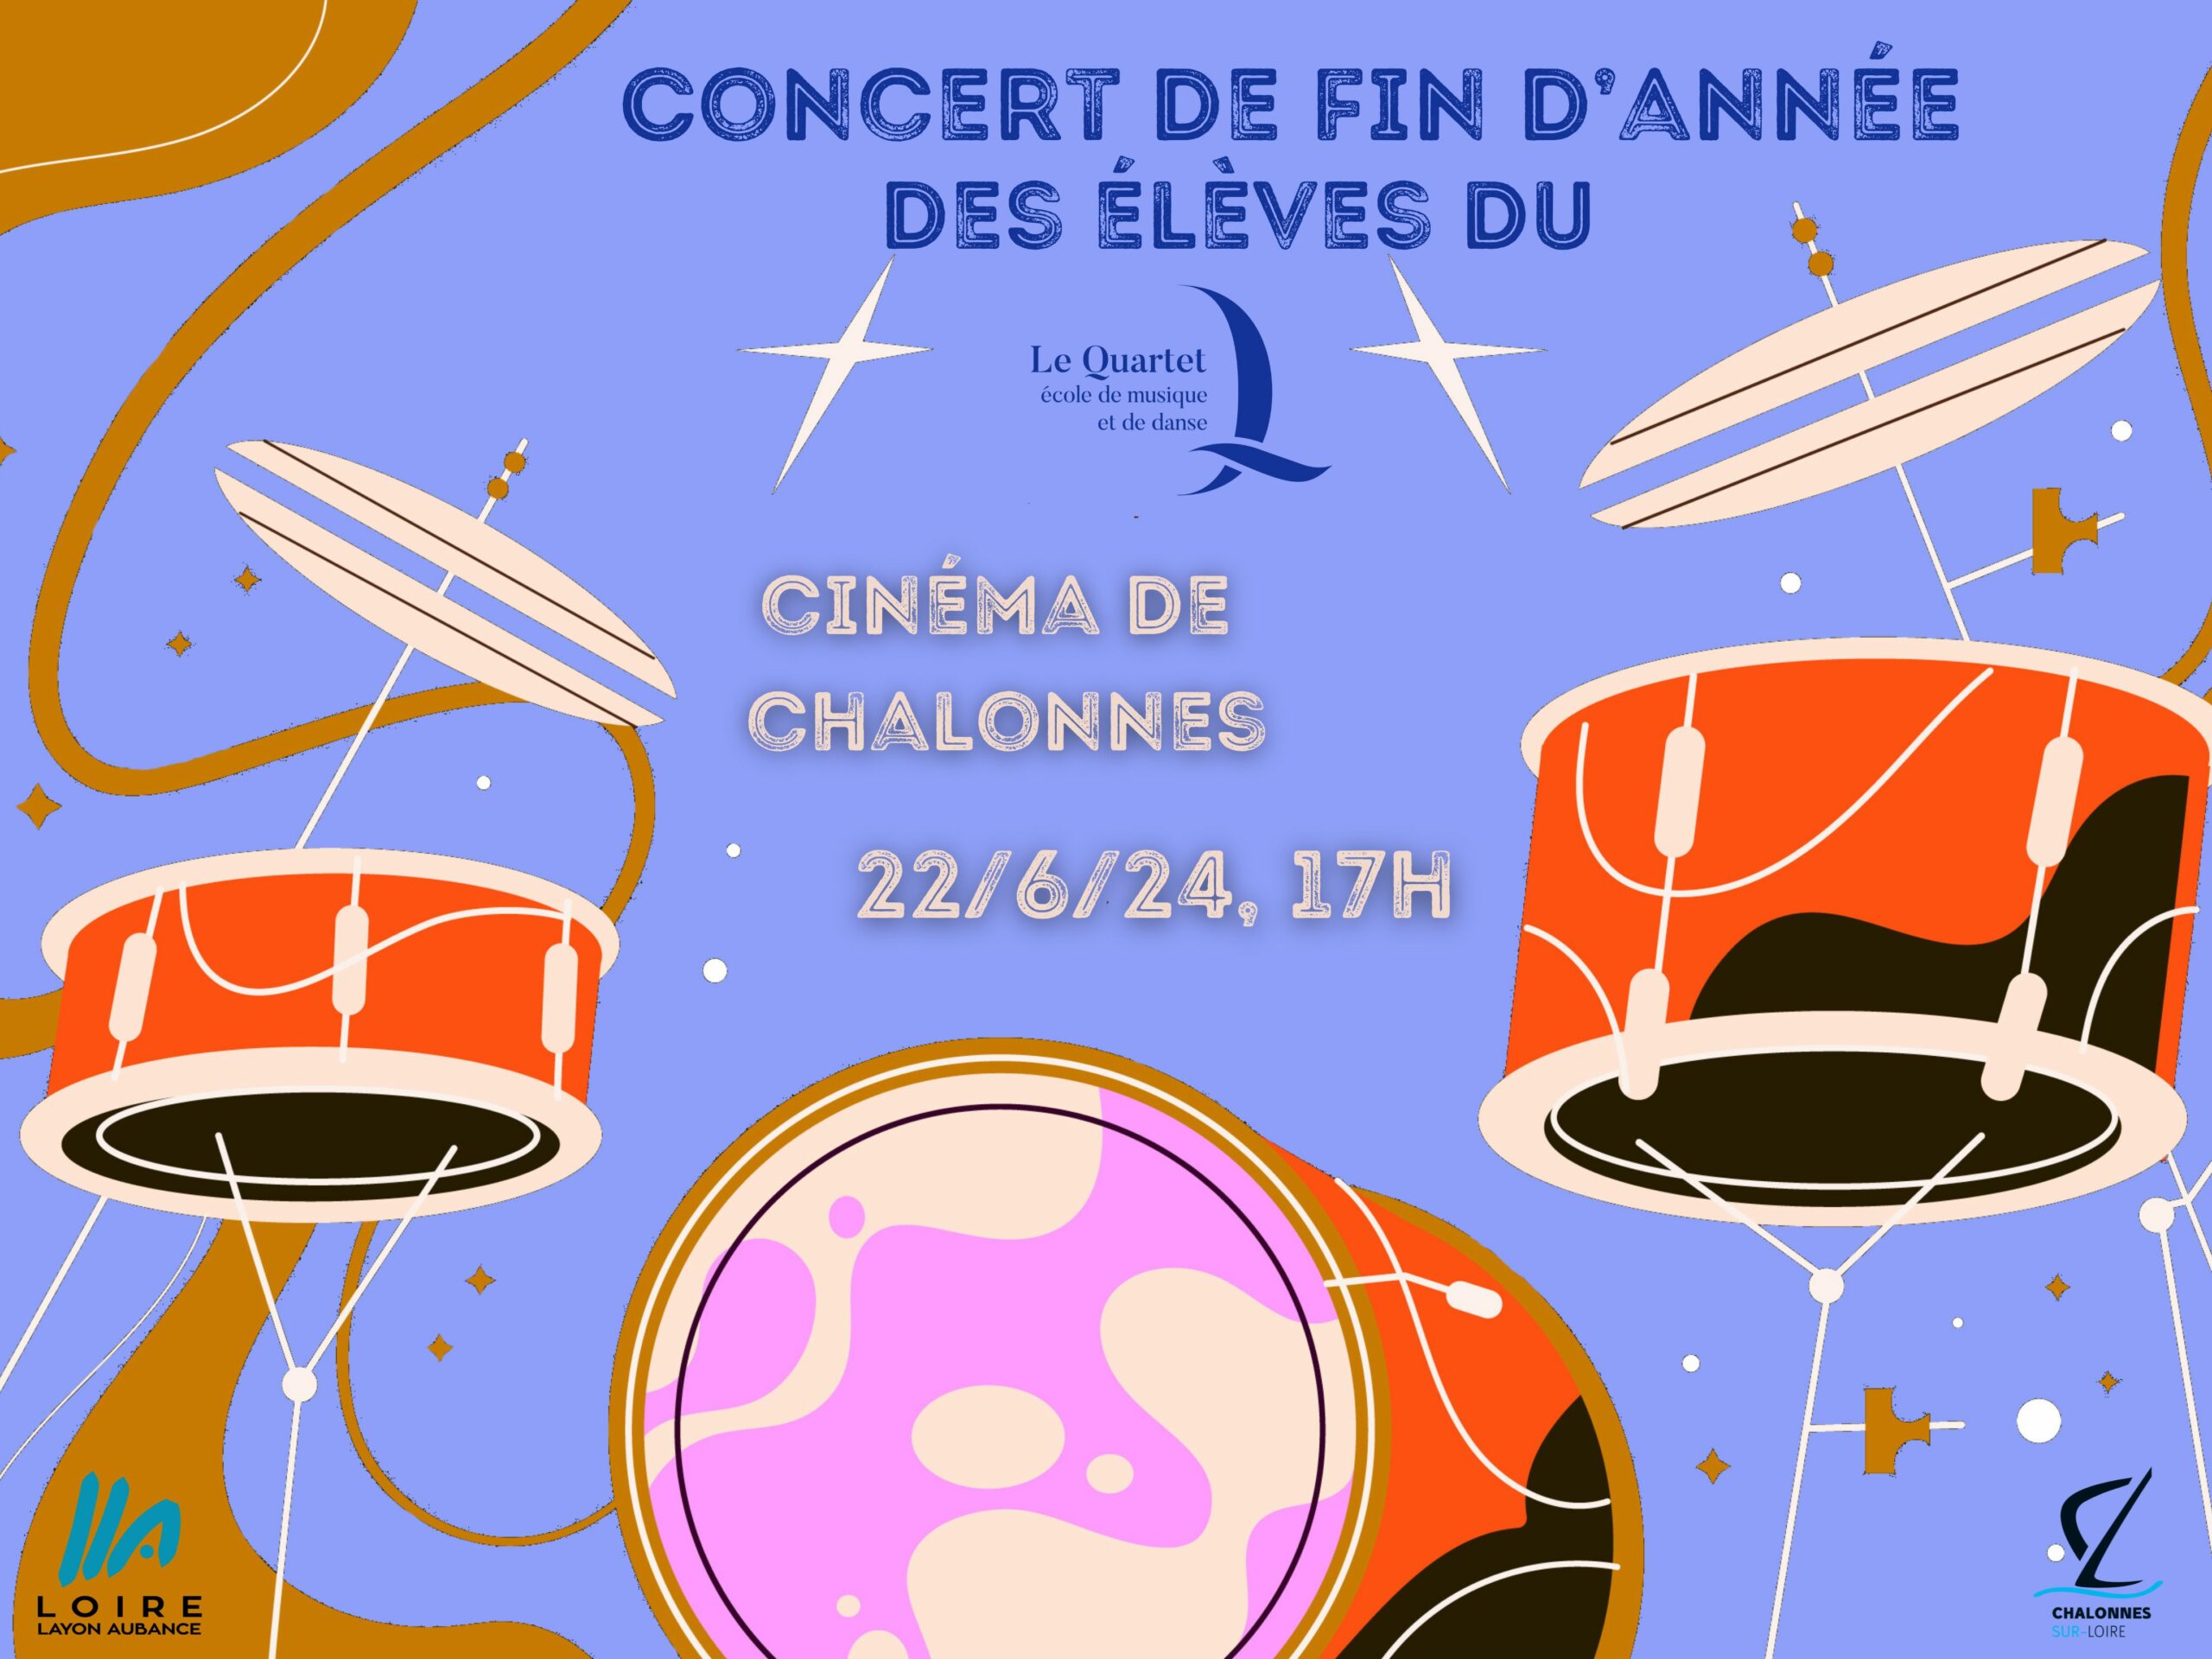 Concert de fin d'année du Pôle Chalonnes